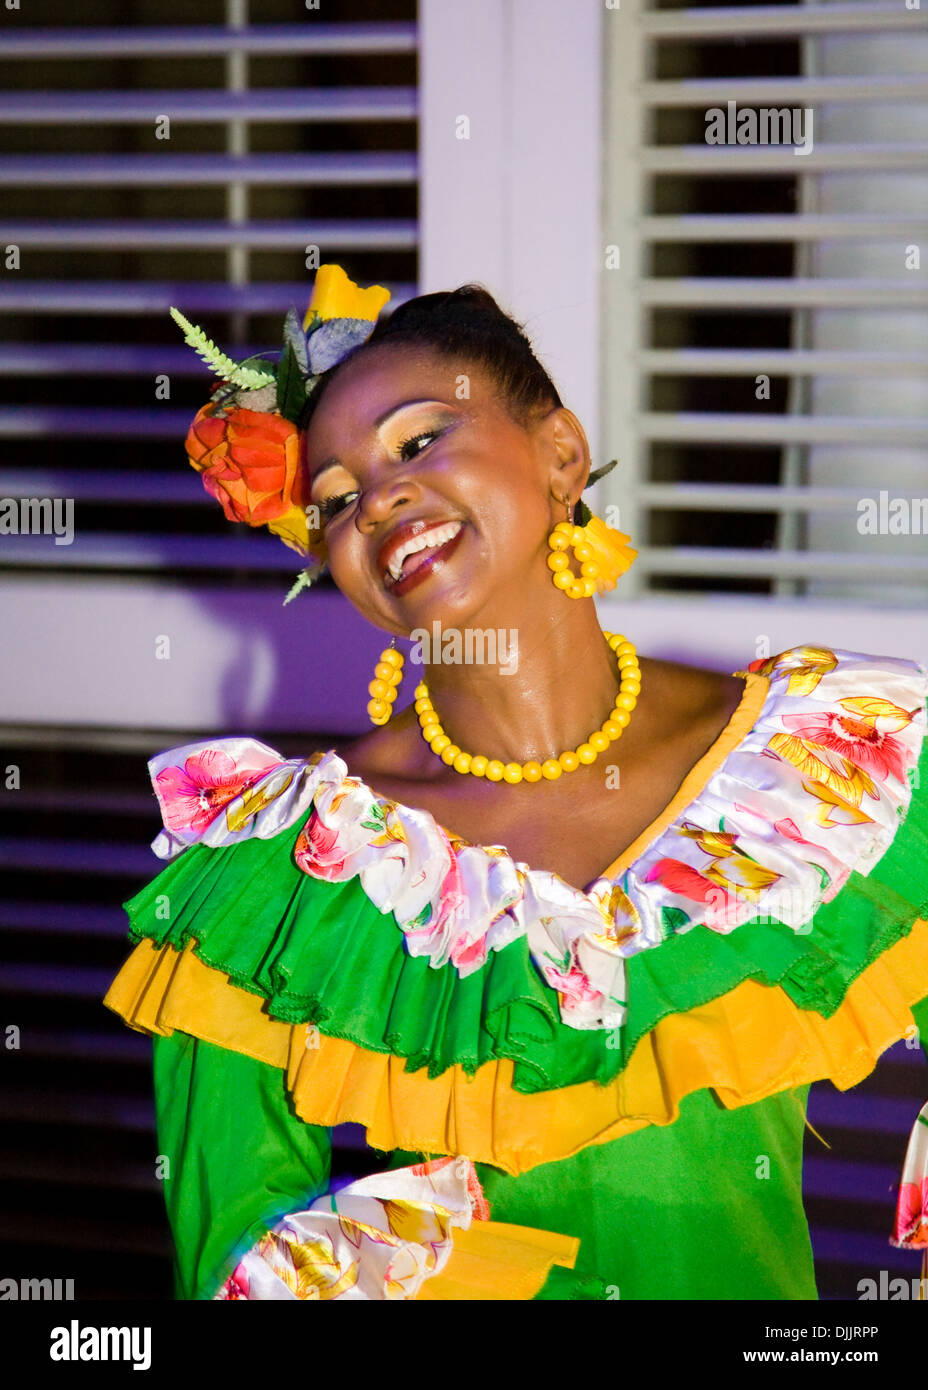 Colorido bailarín en una fiesta en la ciudad de Cartagena de Indias, Colombia Foto de stock